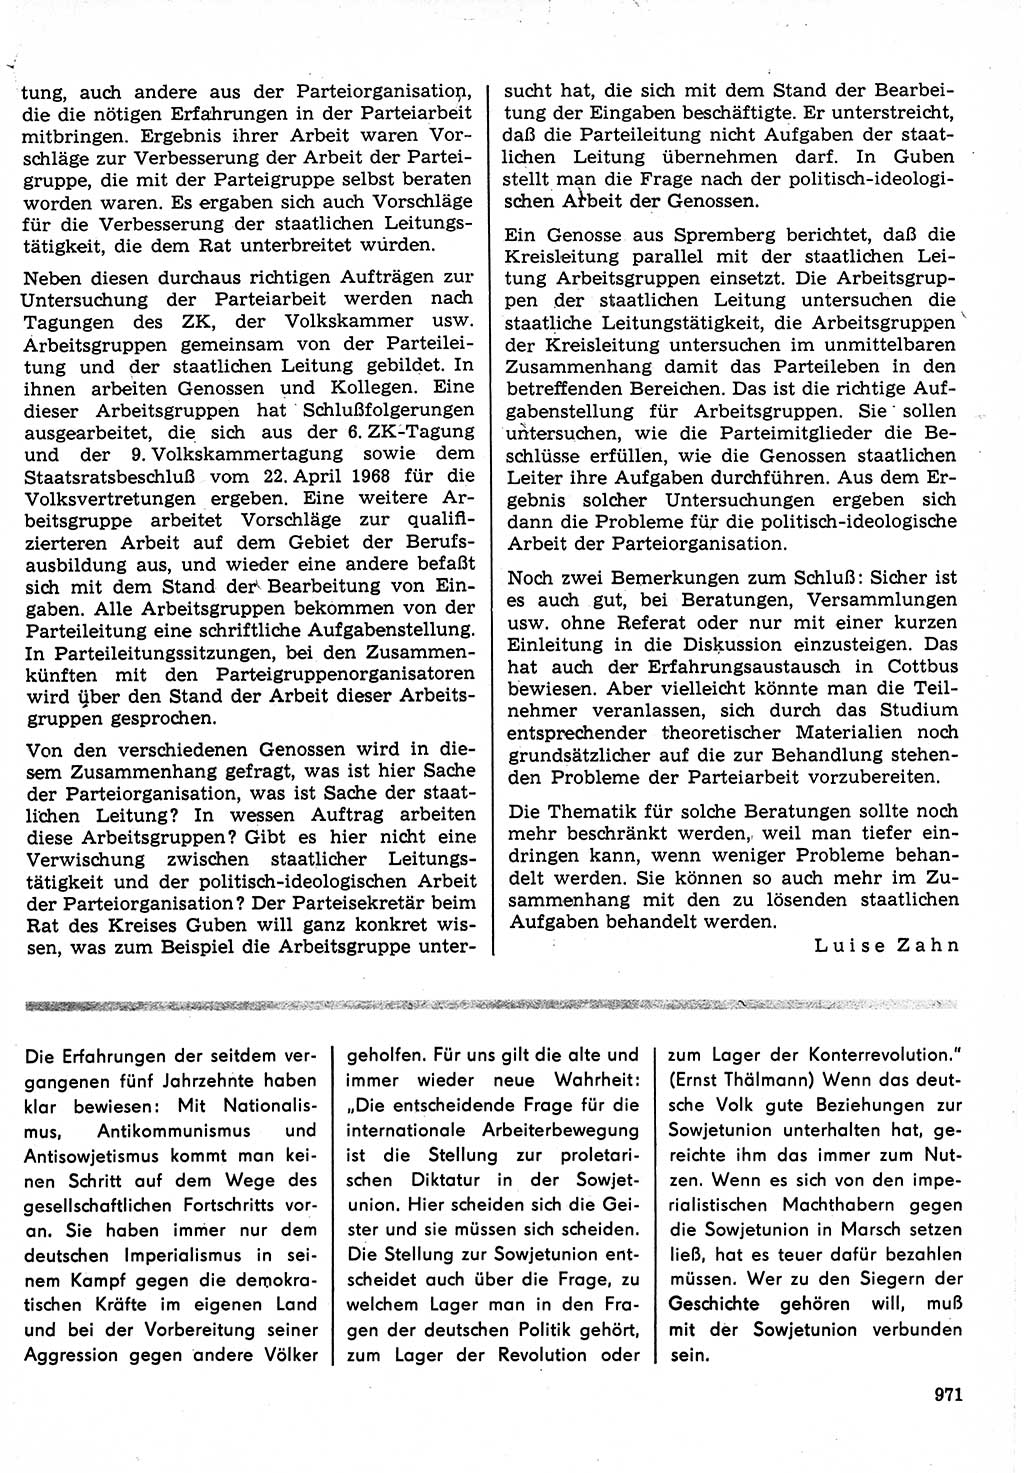 Neuer Weg (NW), Organ des Zentralkomitees (ZK) der SED (Sozialistische Einheitspartei Deutschlands) für Fragen des Parteilebens, 23. Jahrgang [Deutsche Demokratische Republik (DDR)] 1968, Seite 955 (NW ZK SED DDR 1968, S. 955)